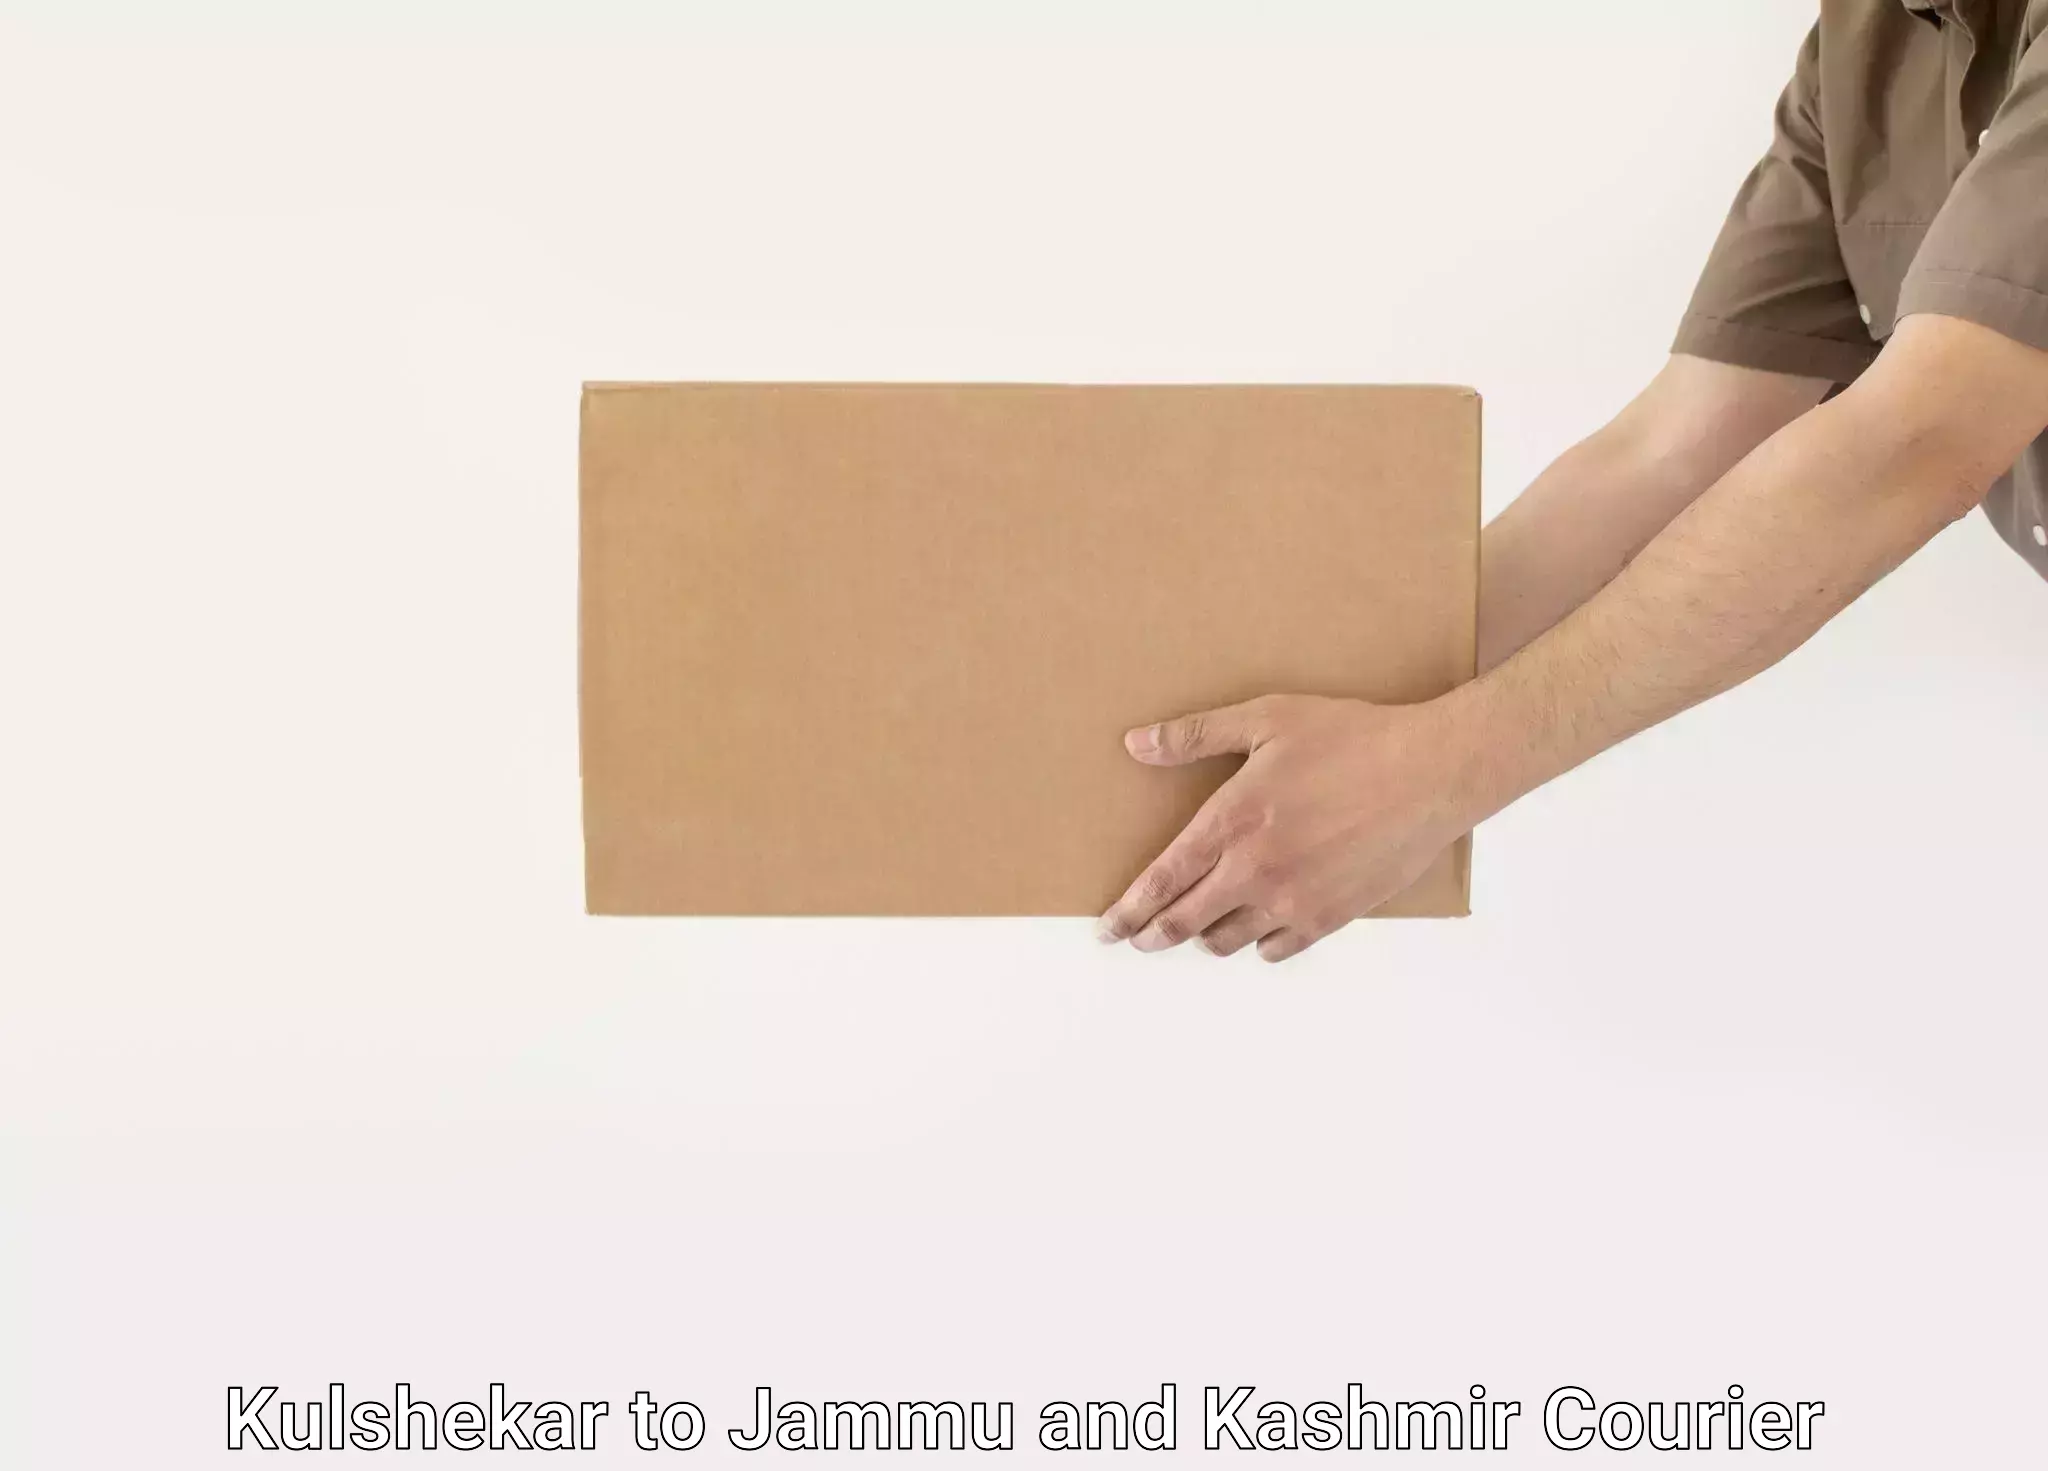 Furniture shipping services Kulshekar to Jammu and Kashmir